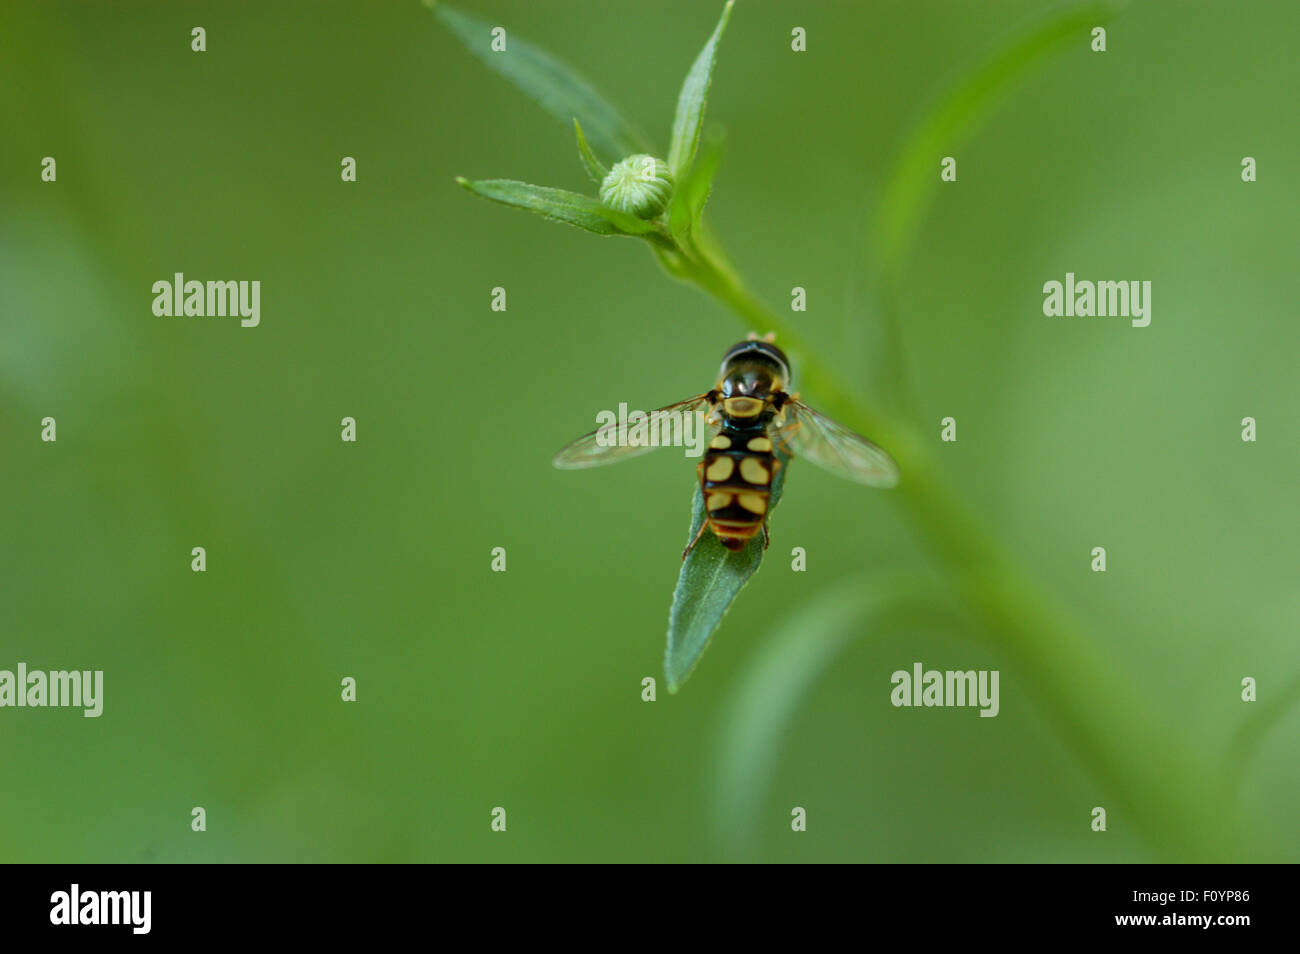 Hoverfly, a veces llamado vuela de flor, sudor o abejas, moscas syrphid conforman el insecto familia Syrphidae. Foto de stock